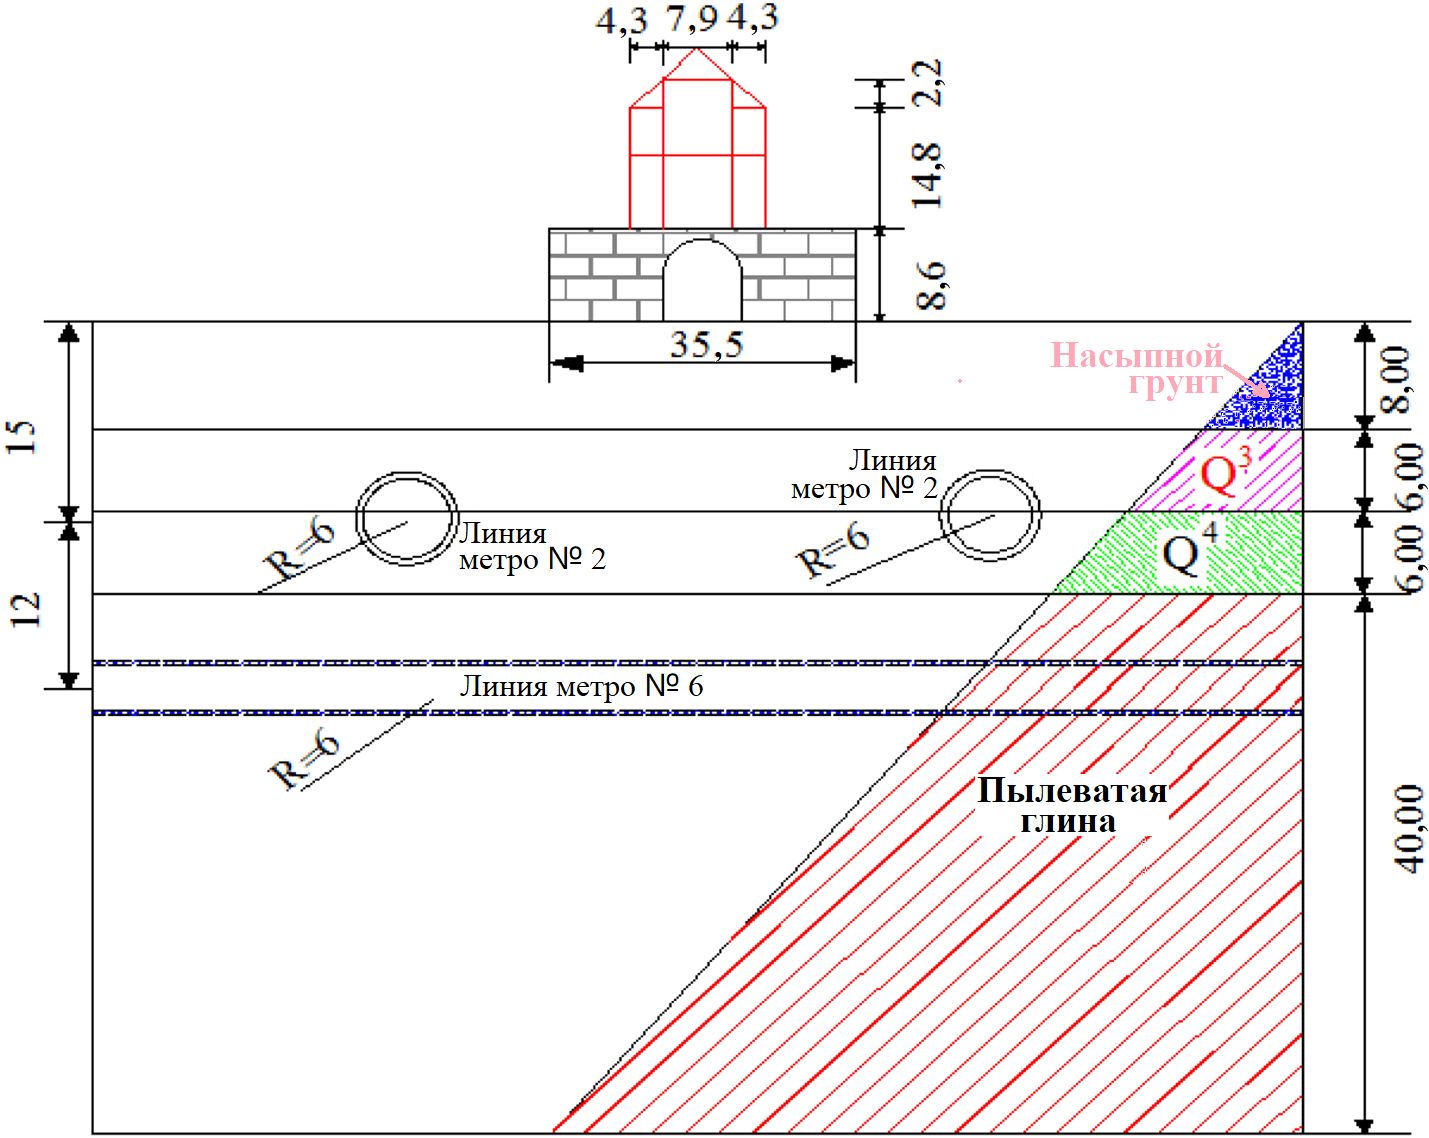 Рис.&nbsp;4. Схематичный вертикальный разрез Колокольной башни и ее основания. Двойными окружностями показаны тоннели метро. Размеры указаны в метрах